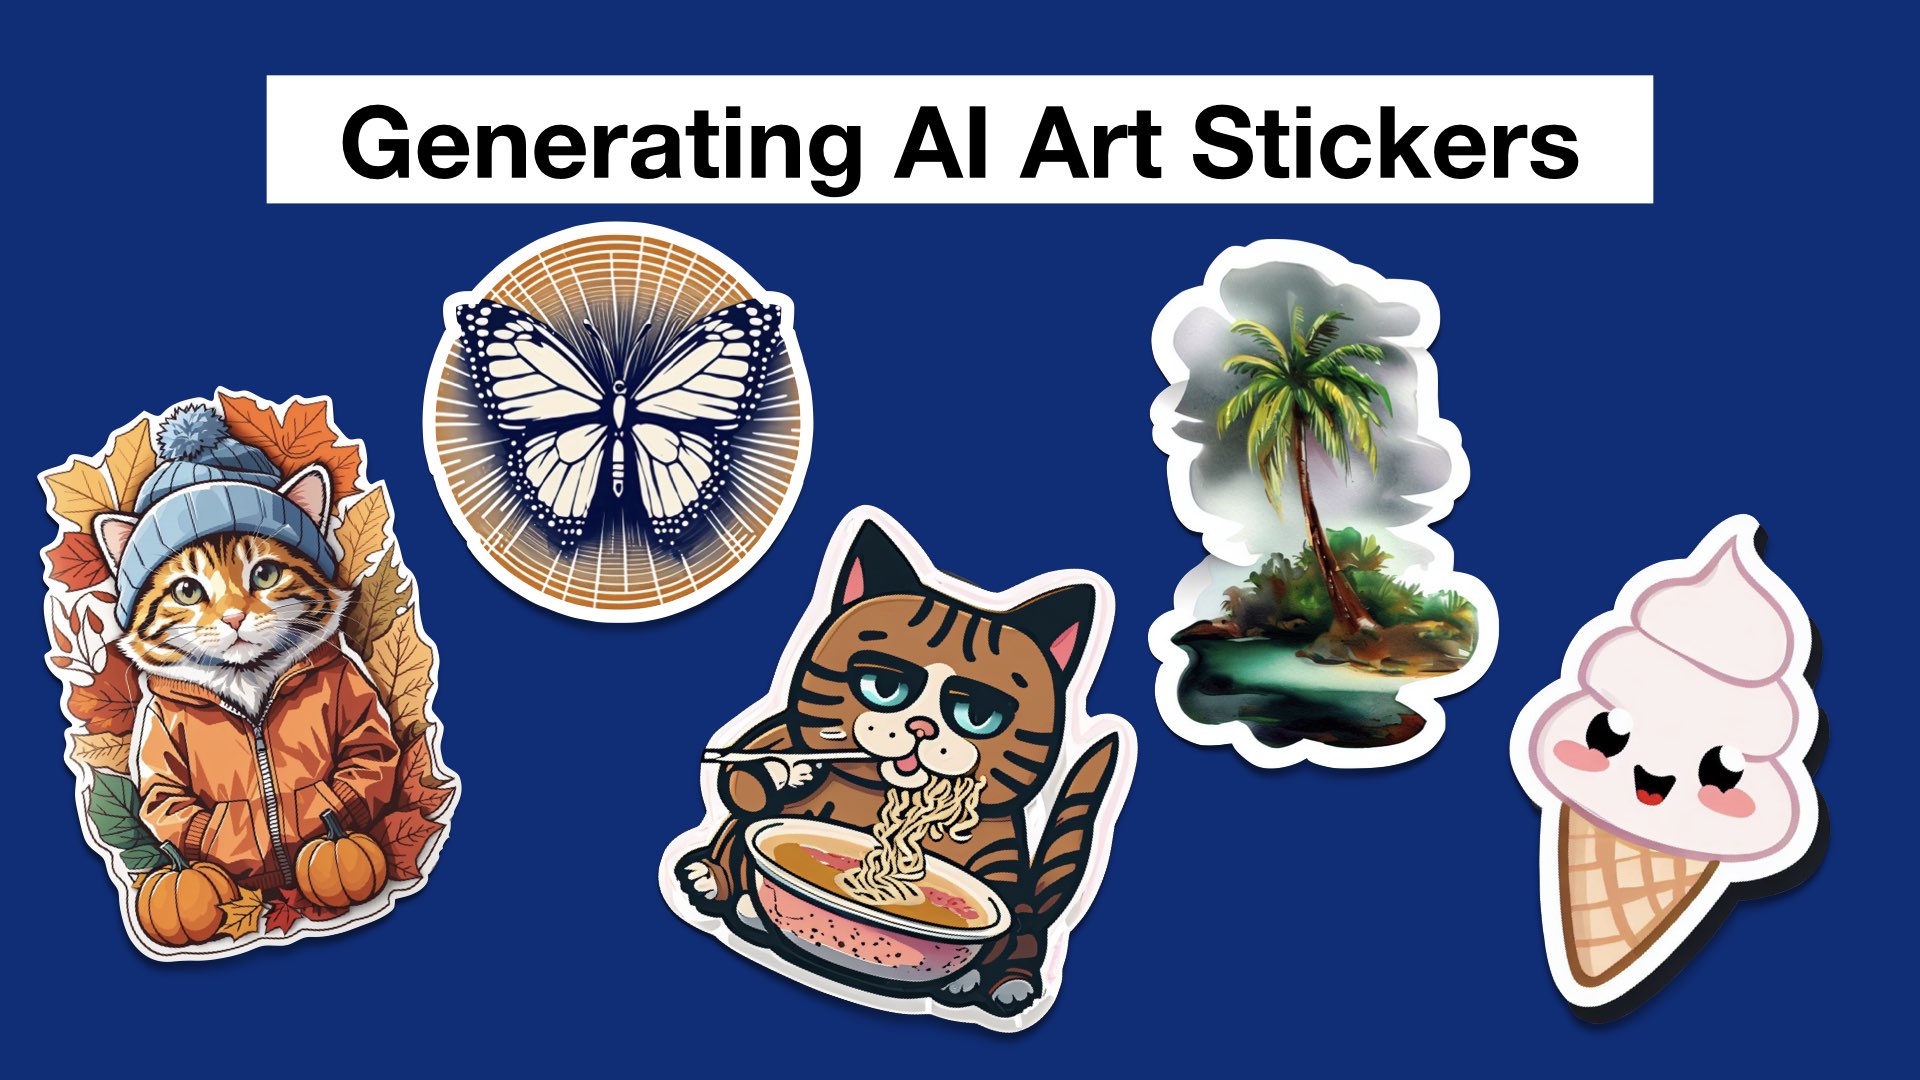 I Am a New Creation! Shape Stickers